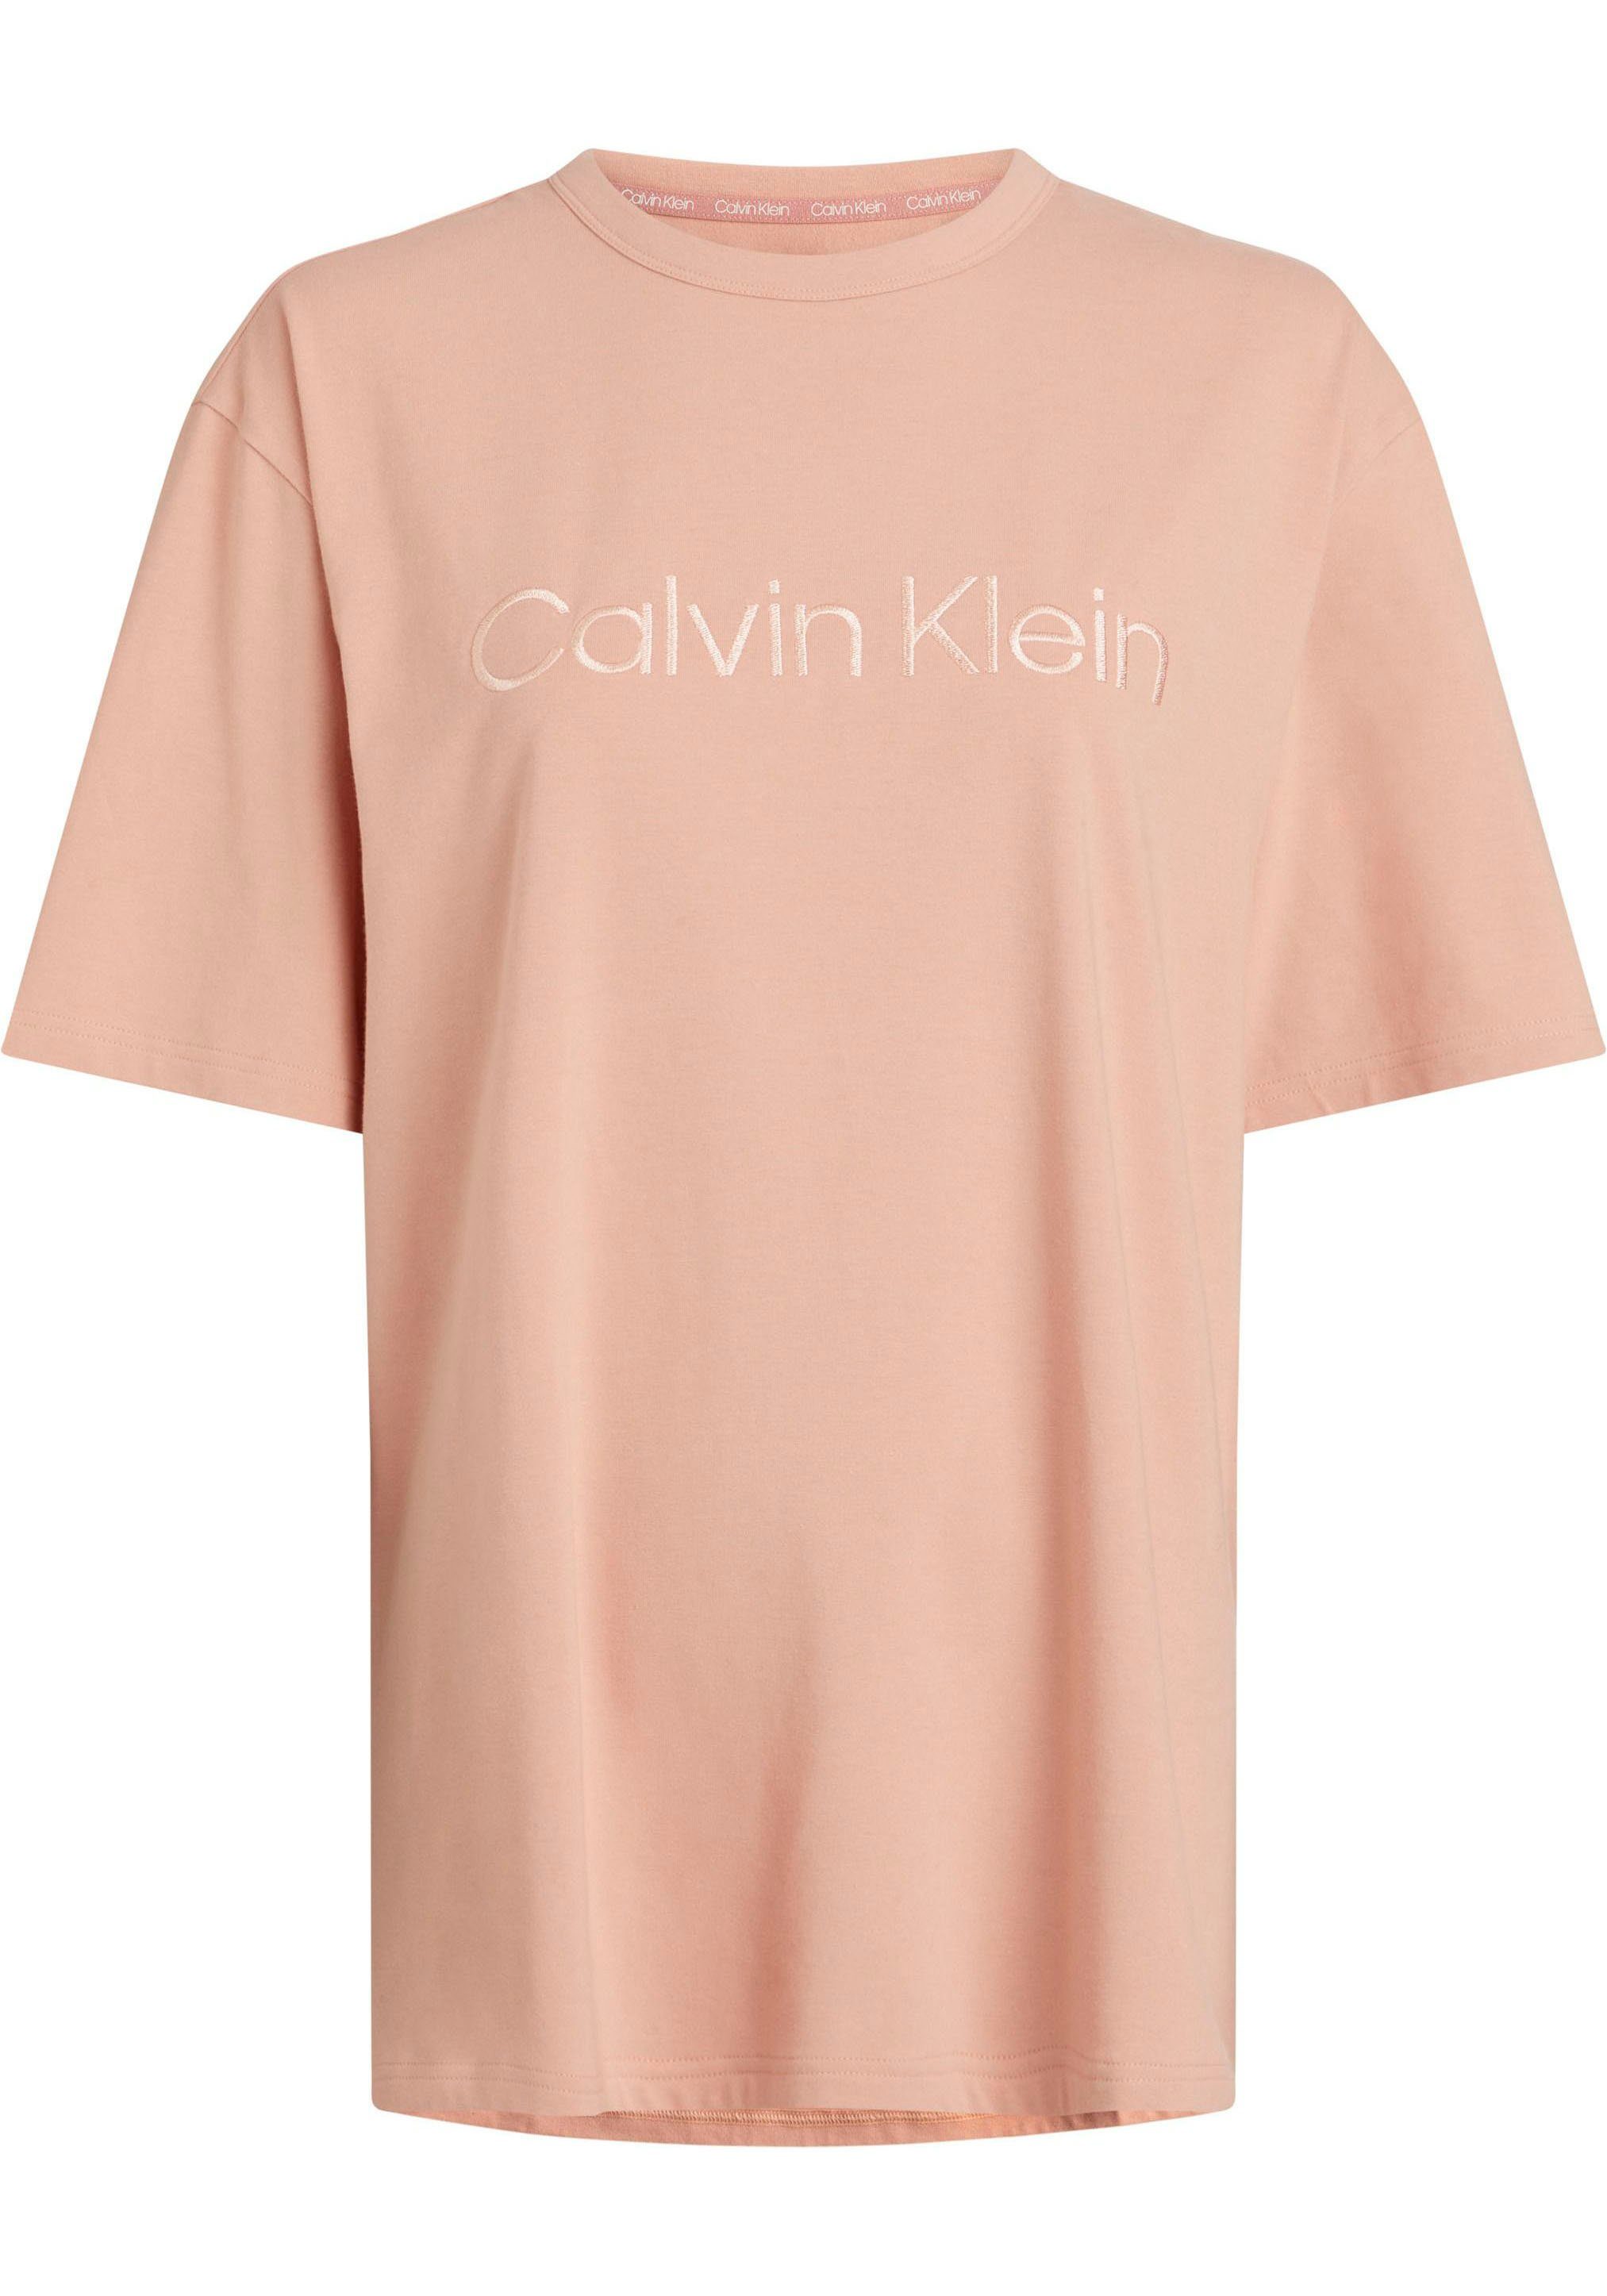 Klein Brust mit Underwear S/S auf Calvin CREW T-Shirt NECK Logoschriftzug der